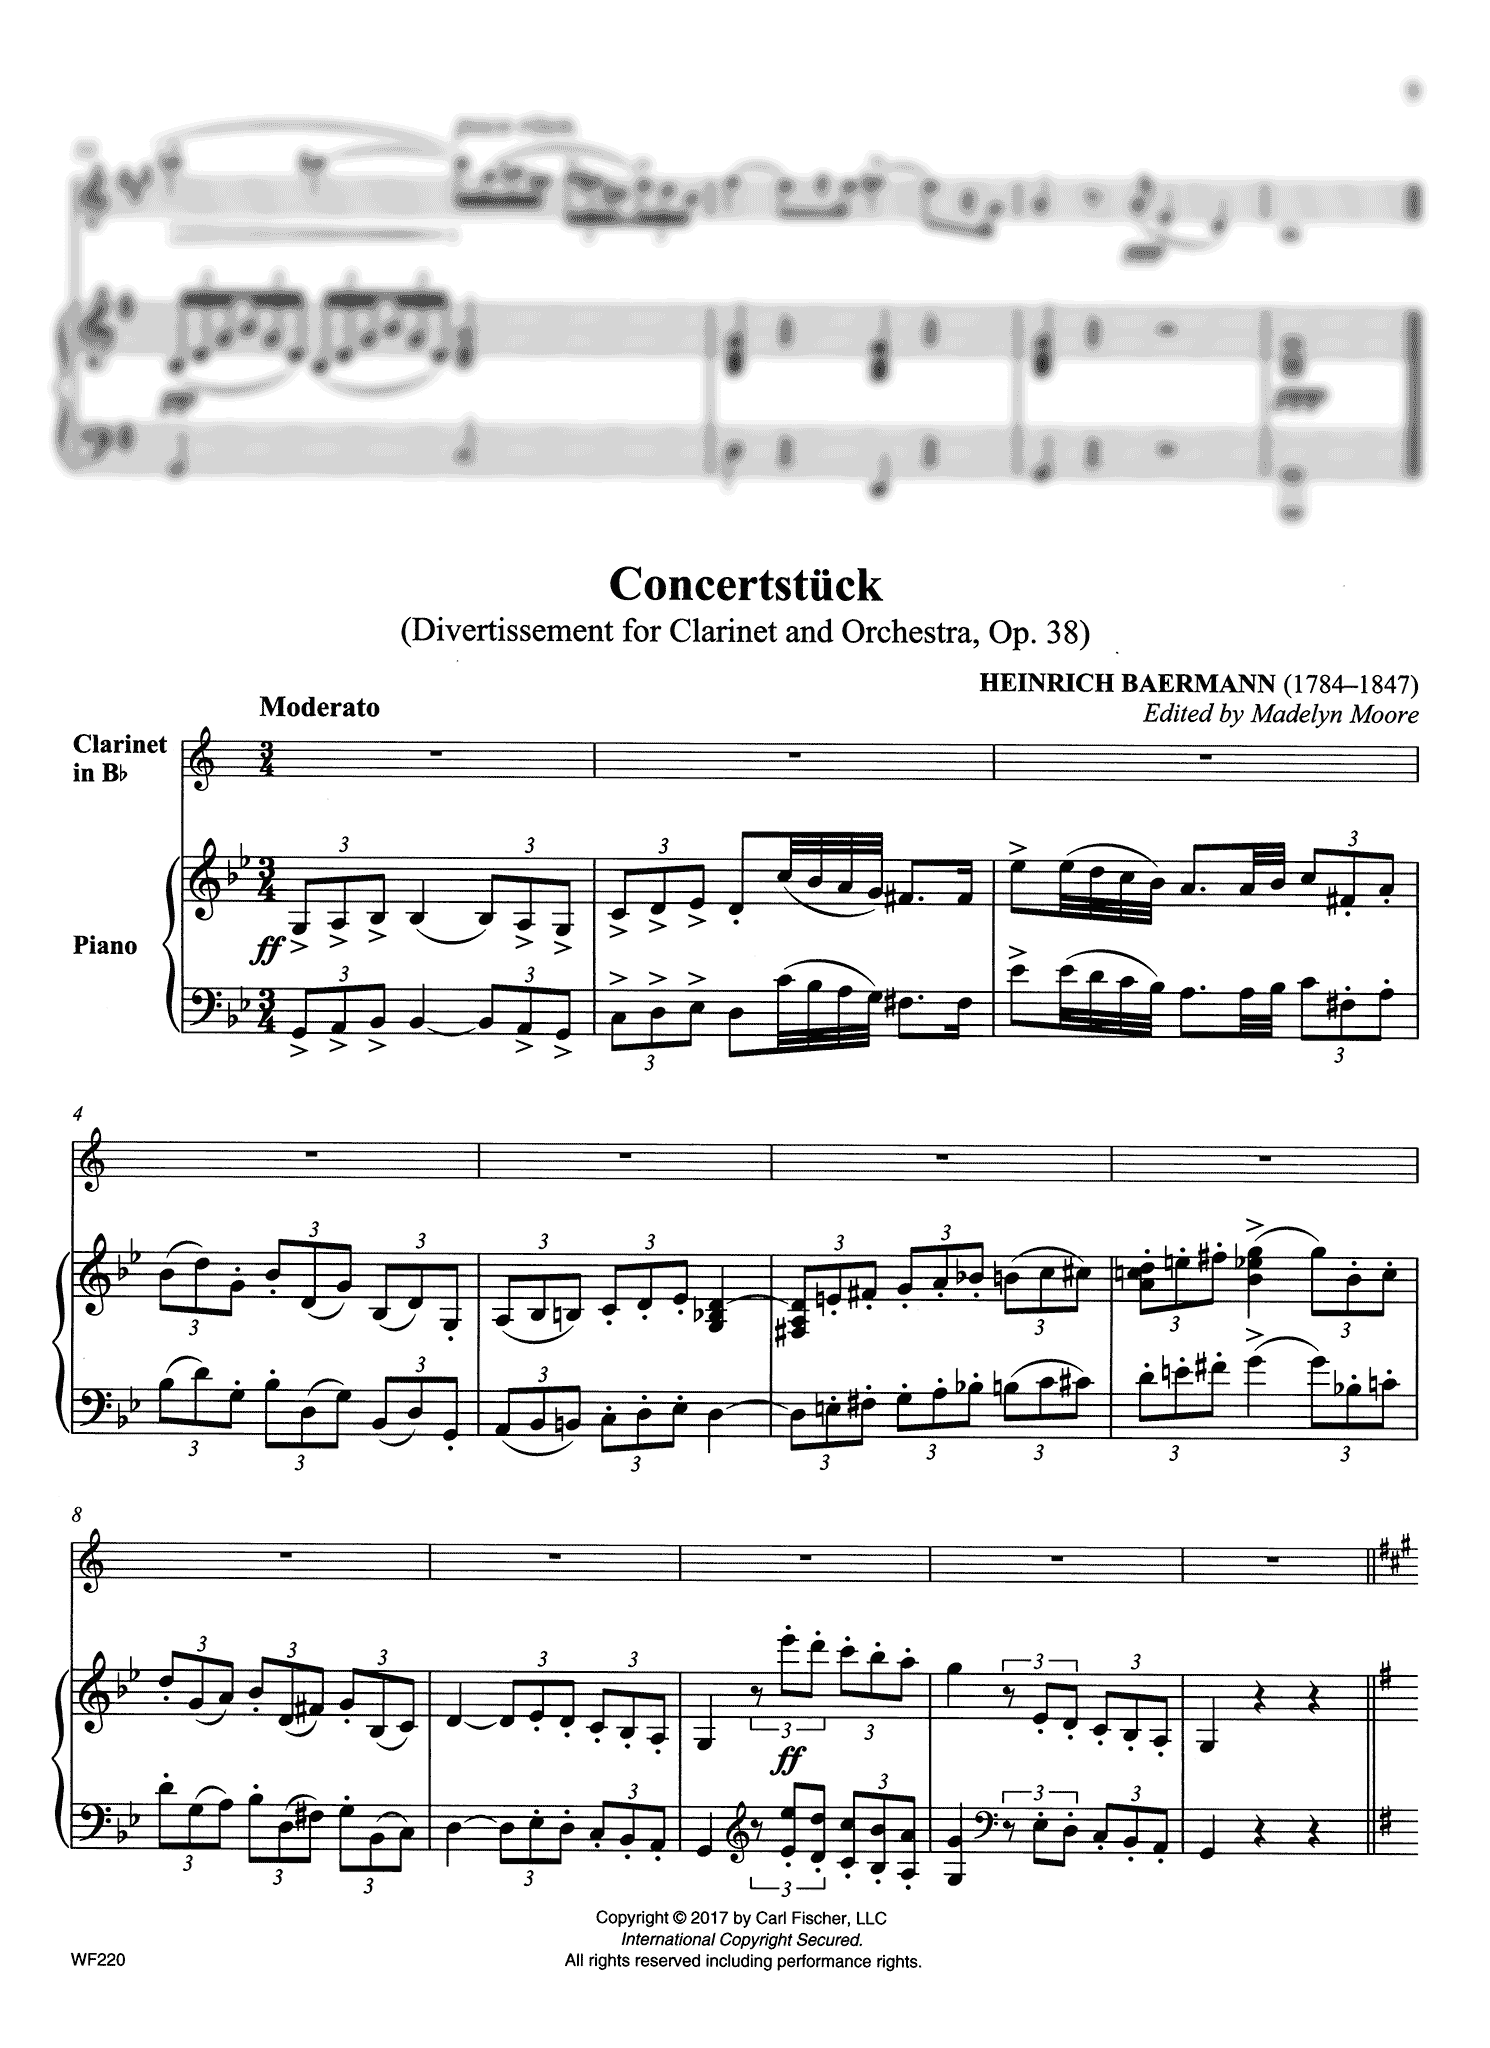 Concertstück (Divertissement, Op. 38) Score